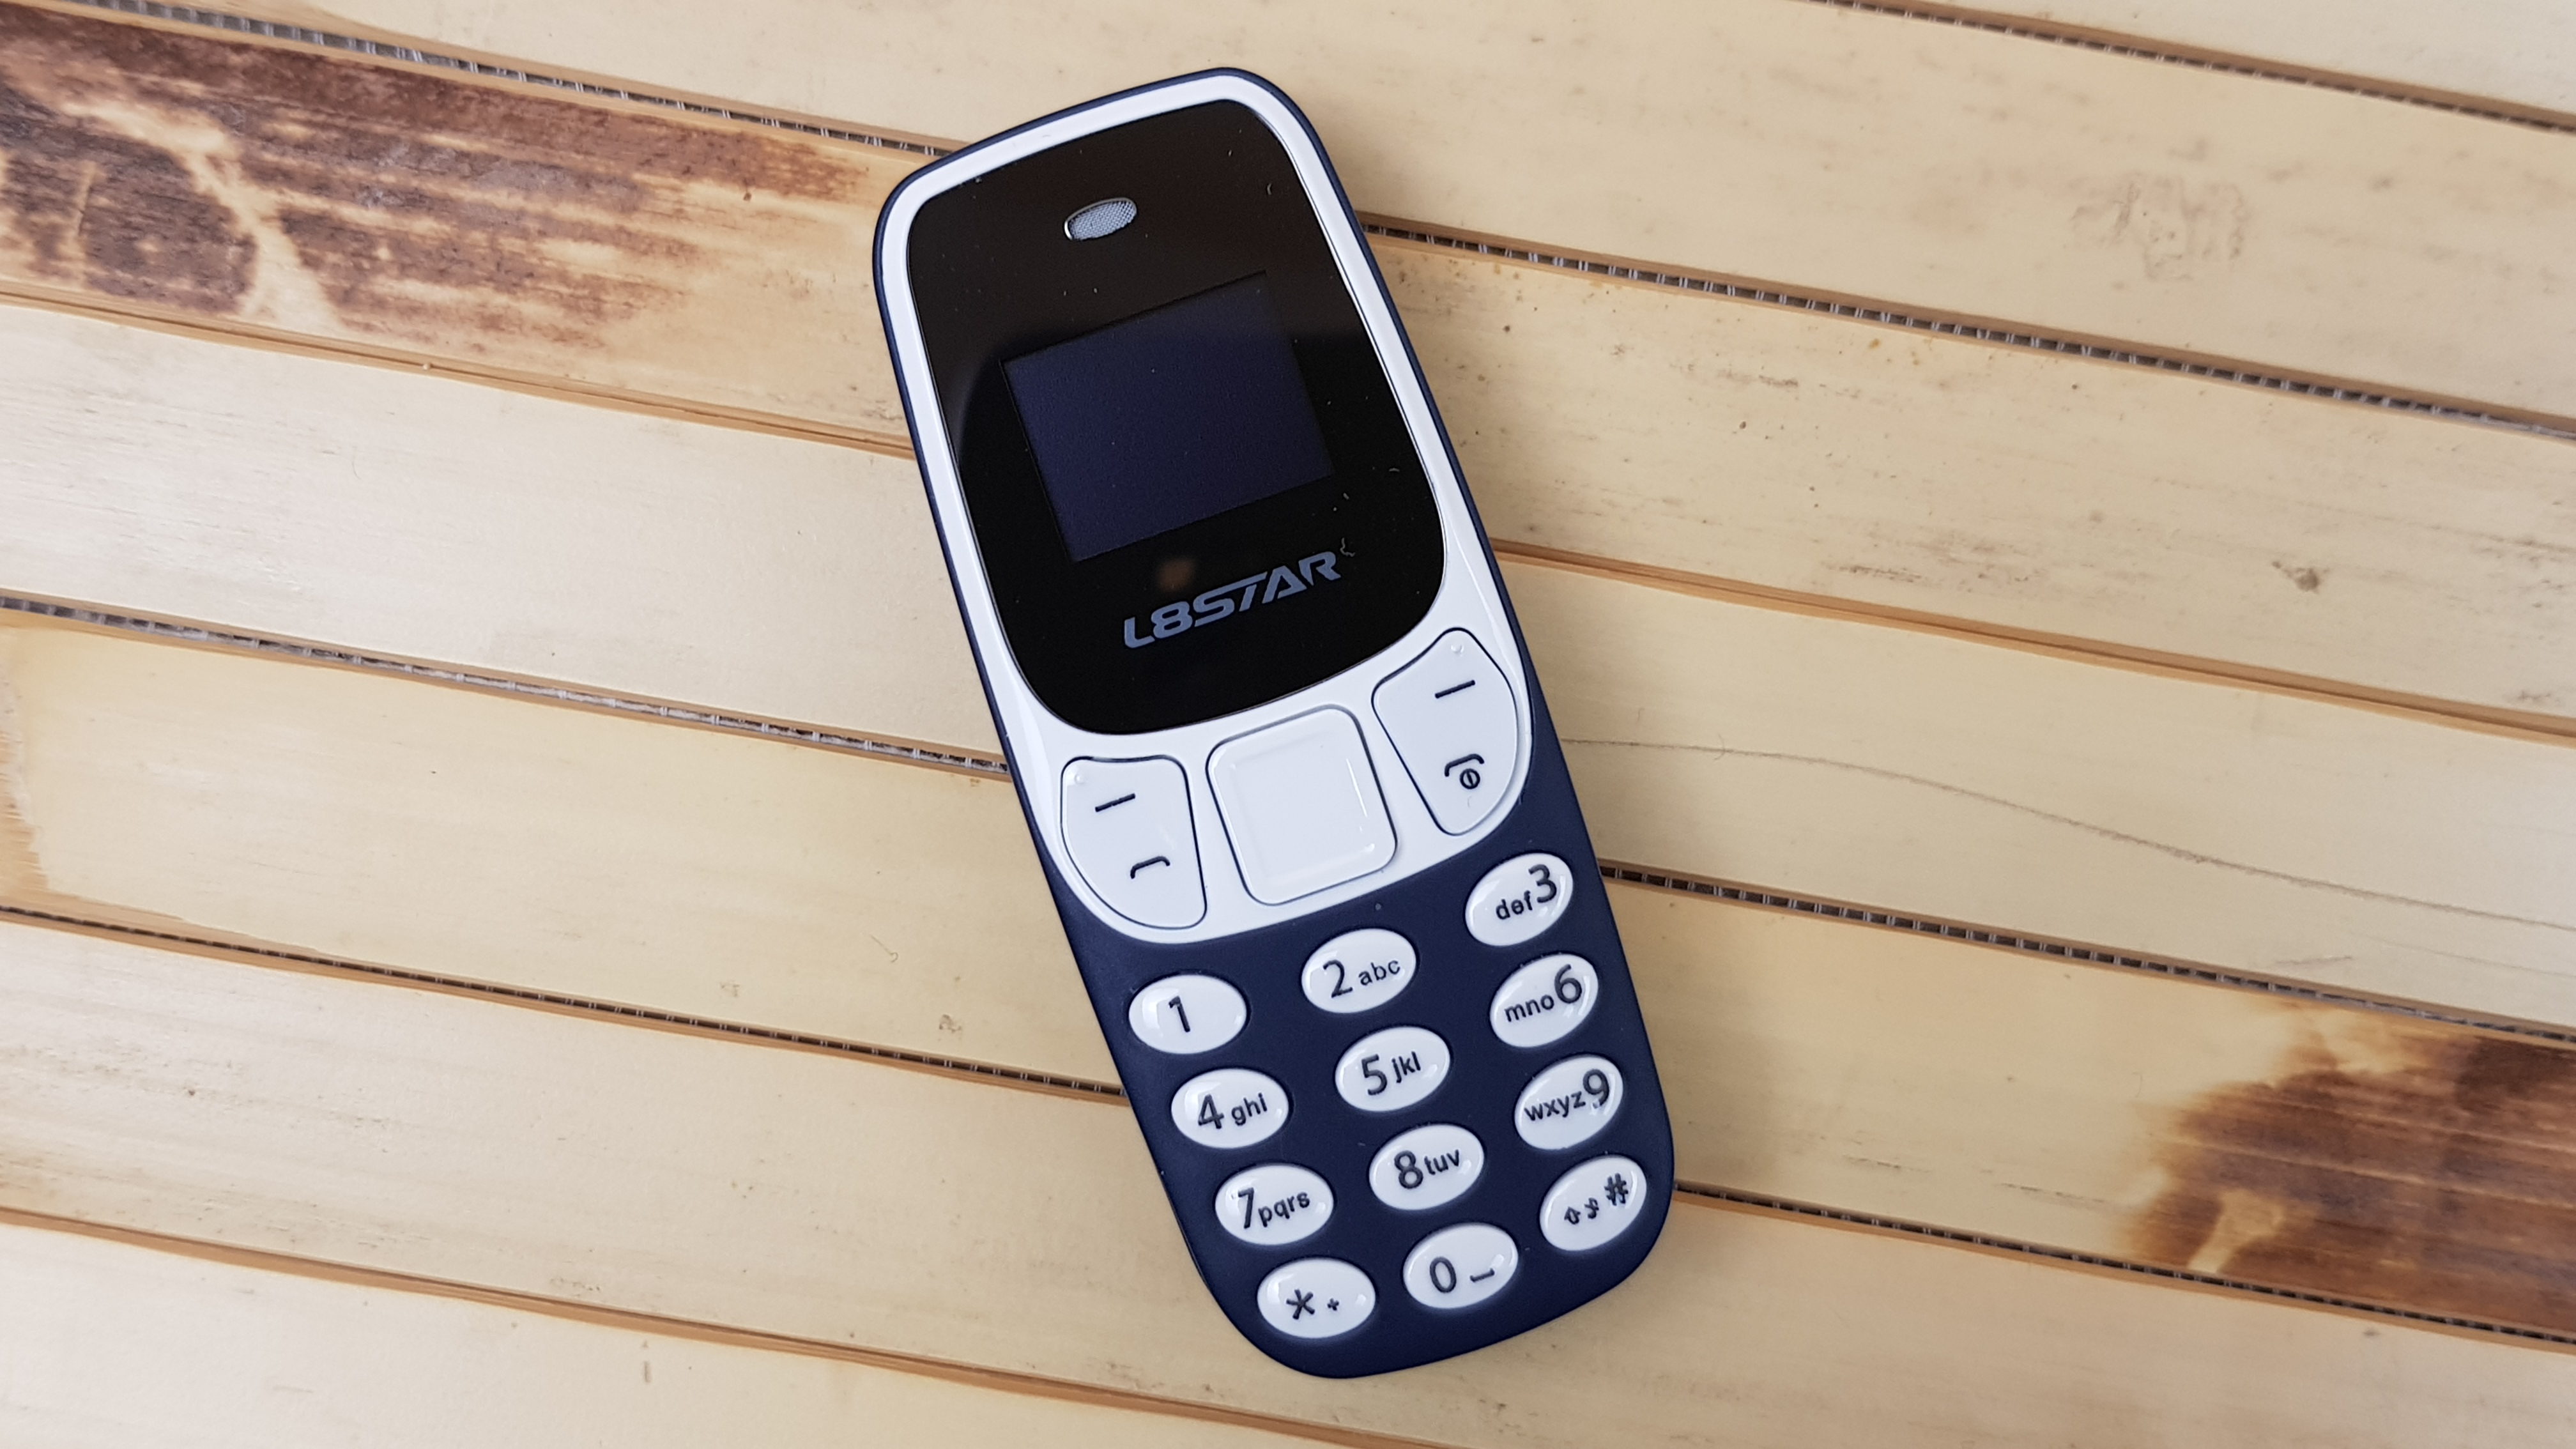 L8star bm10. Миниатюрный мобильный телефон l8star bm10. Мини Nokia. Nokia 3310 с двумя SIM.